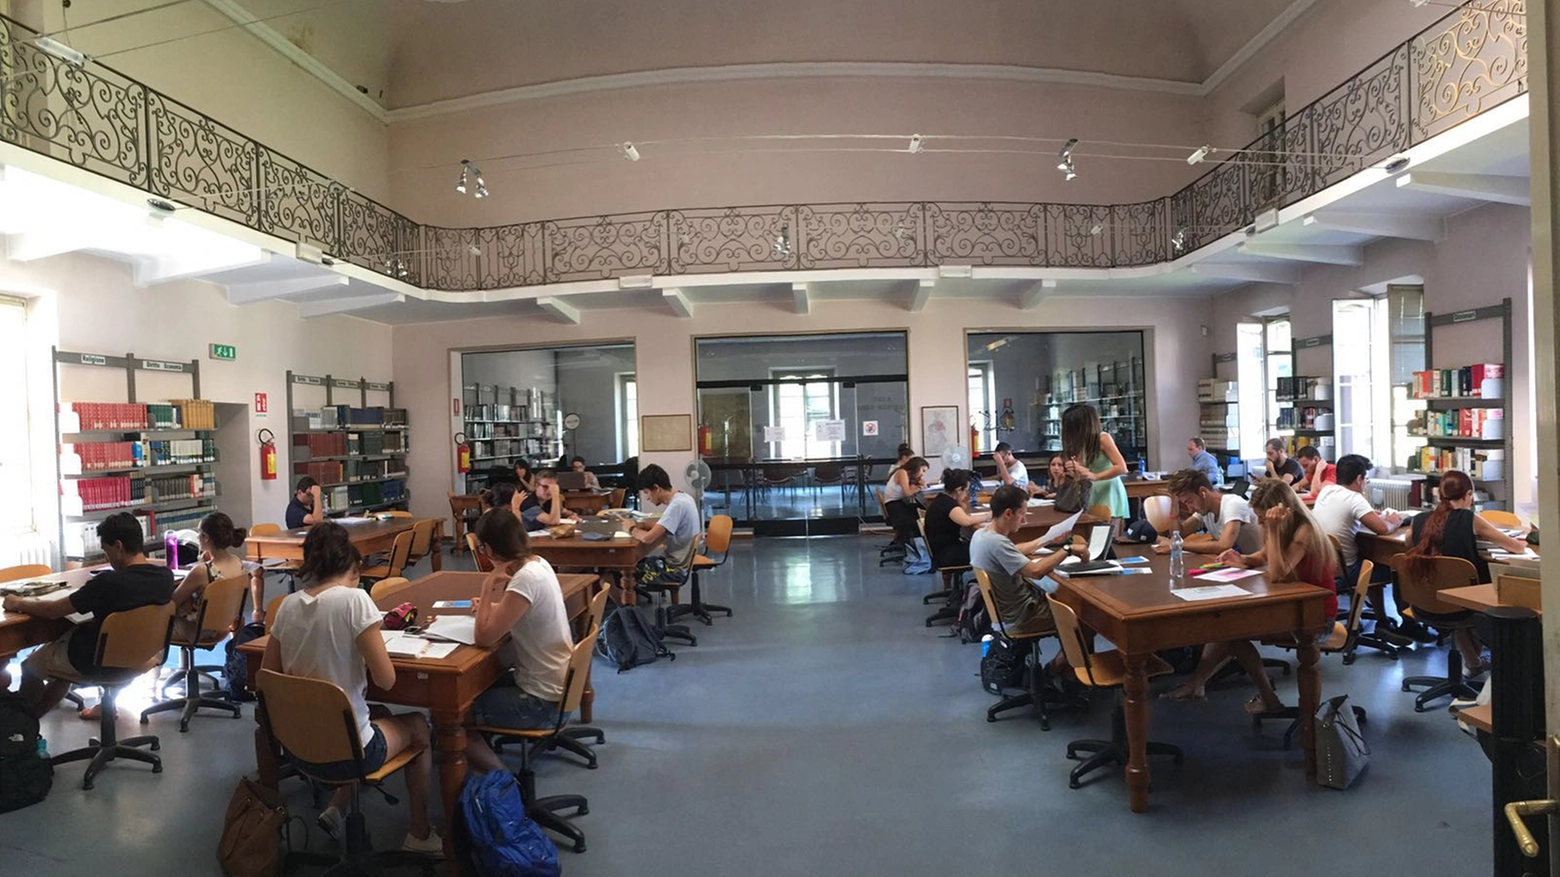 La sala studio della biblioteca civica di Varese piena di studenti